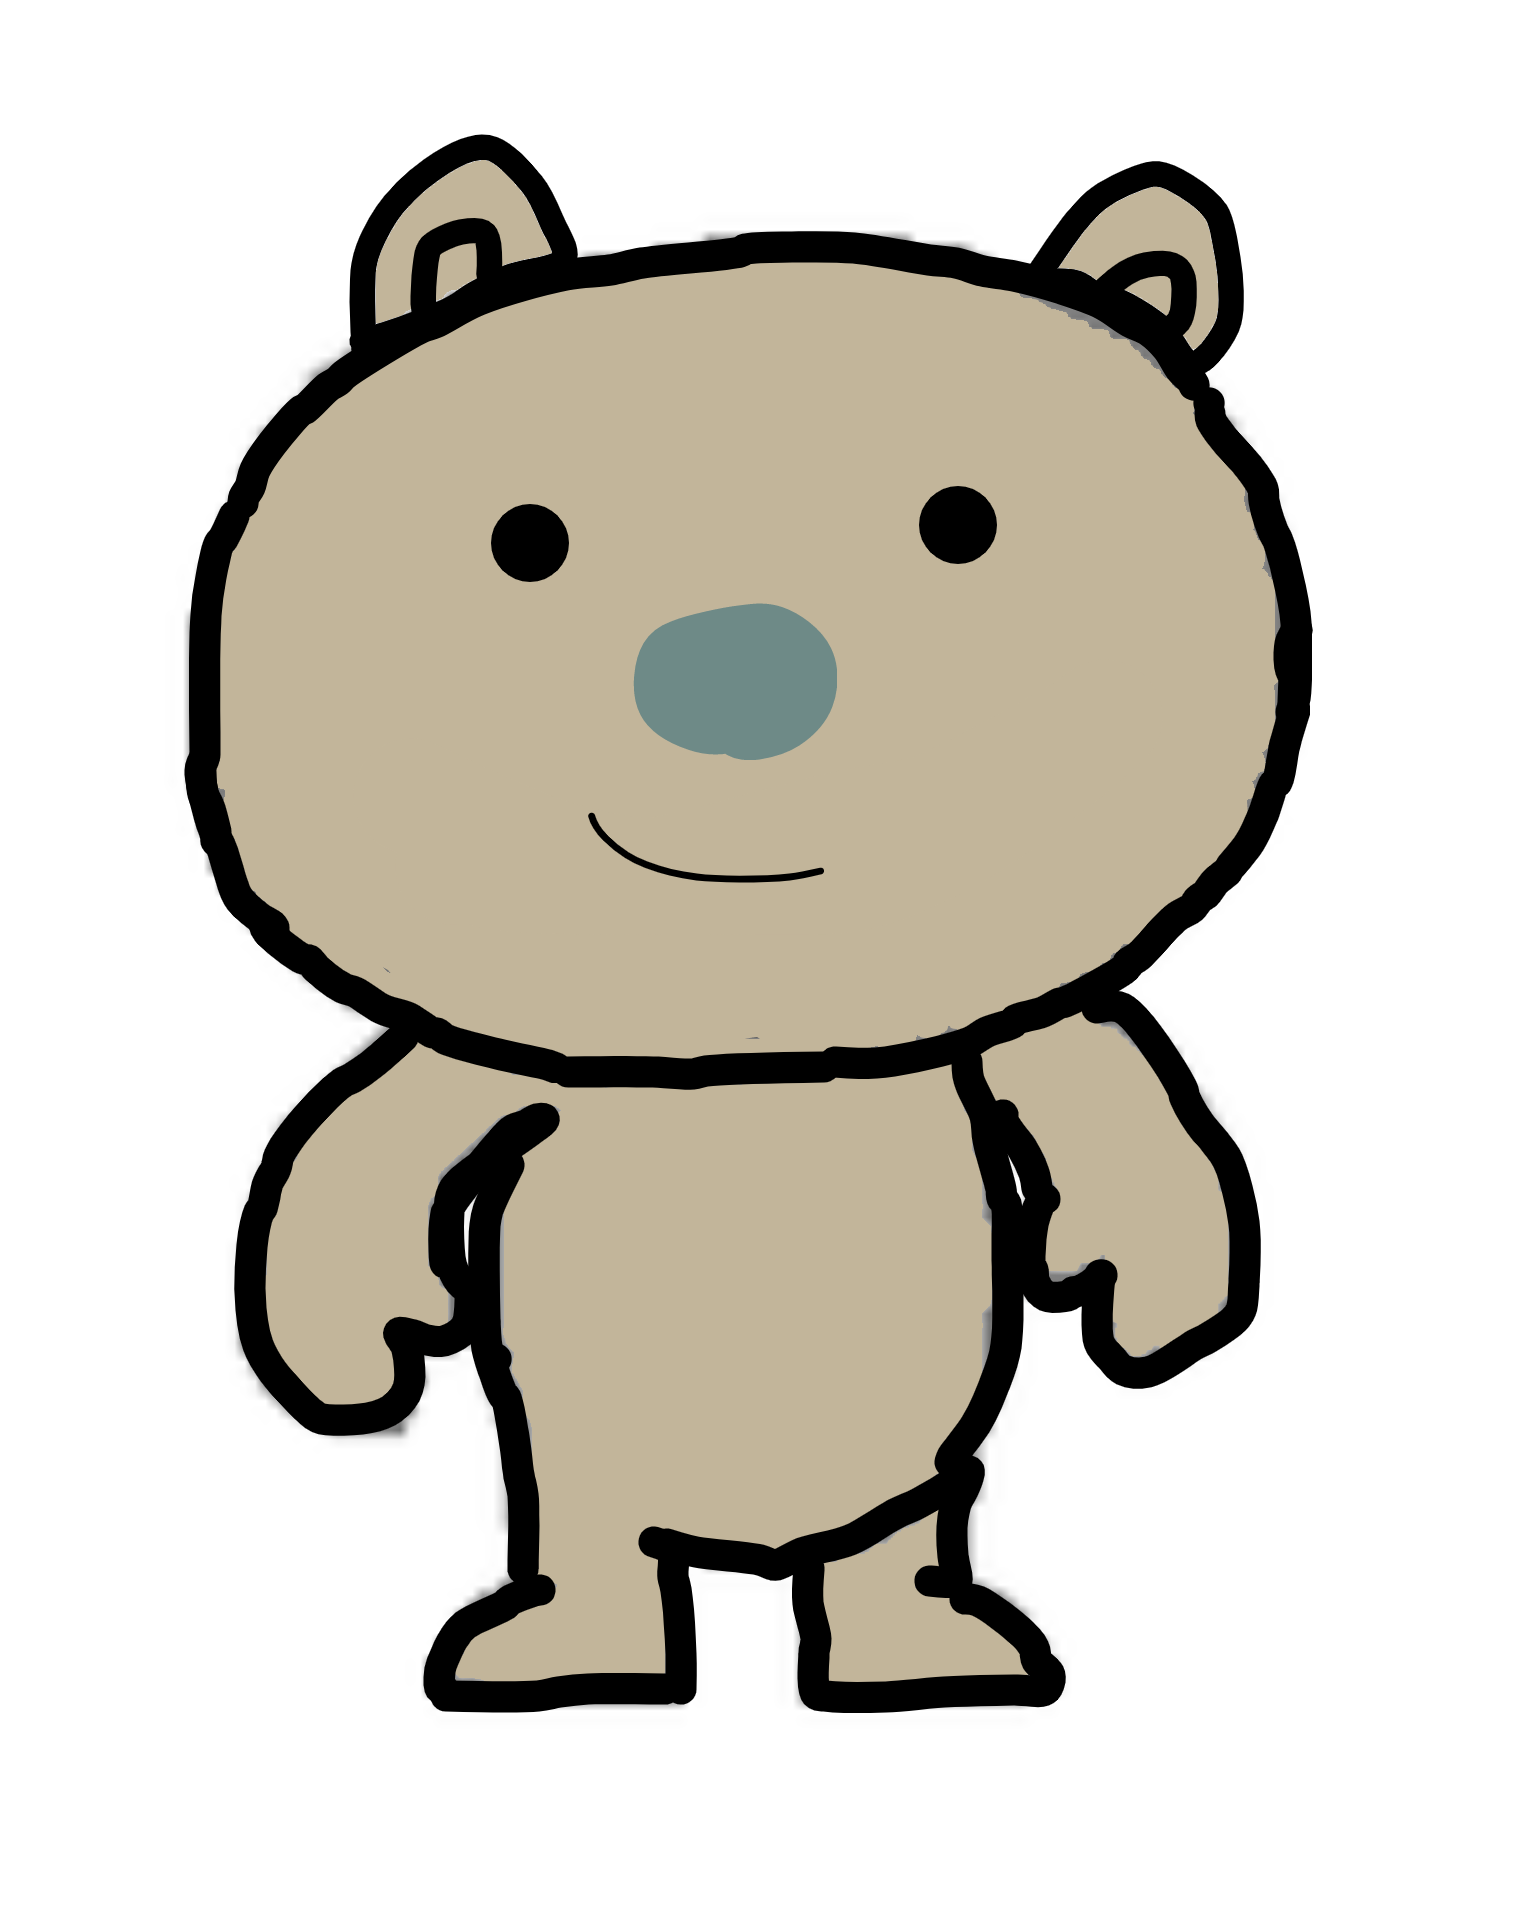 idiot.bear, Roblox BEAR Wiki